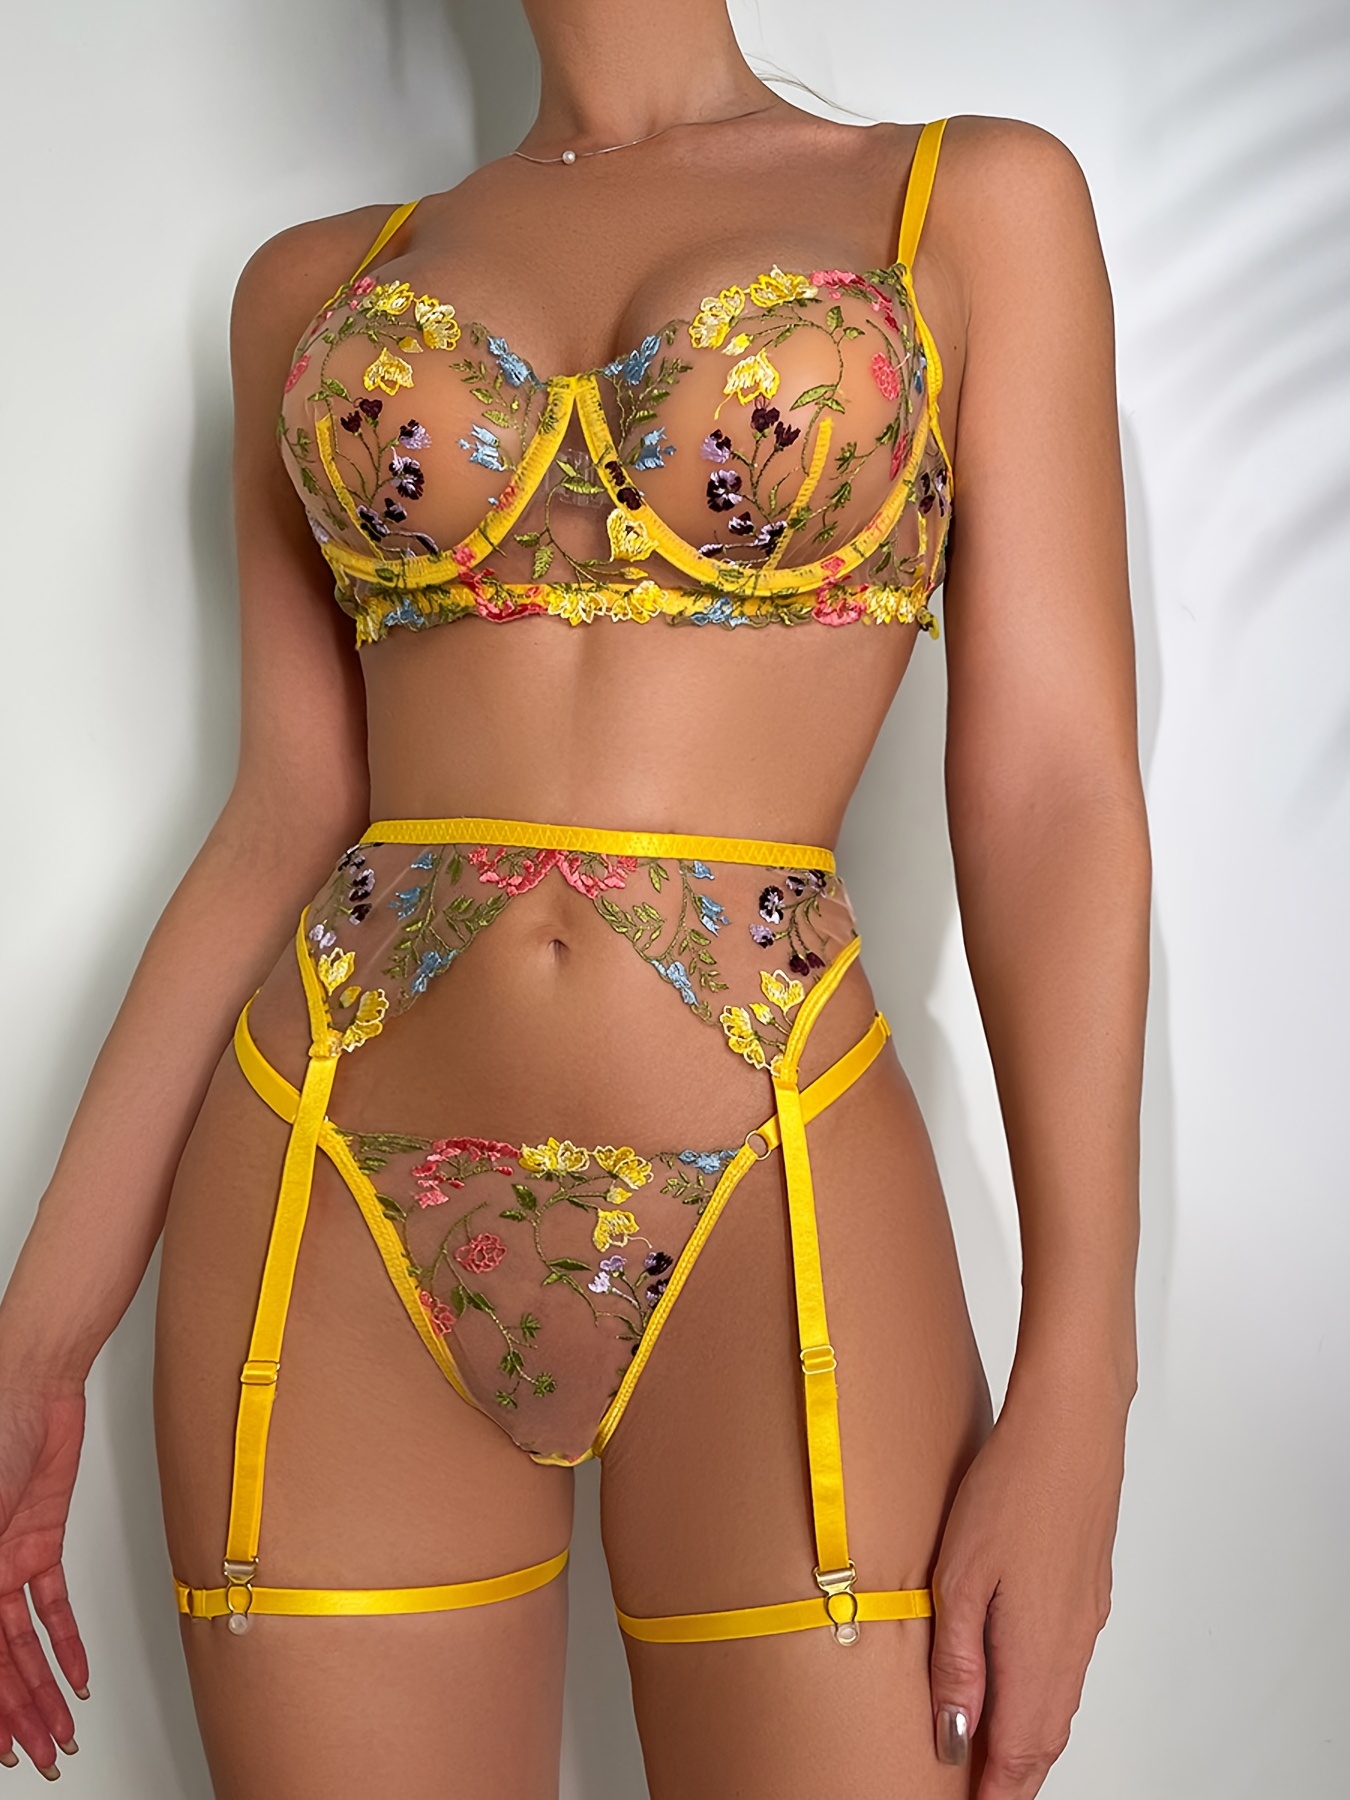 Women's Lingerie Set with Lace Garner Fun Underwear Yellow Flower  Embroidery Bra Sexy See Through Underwear Set